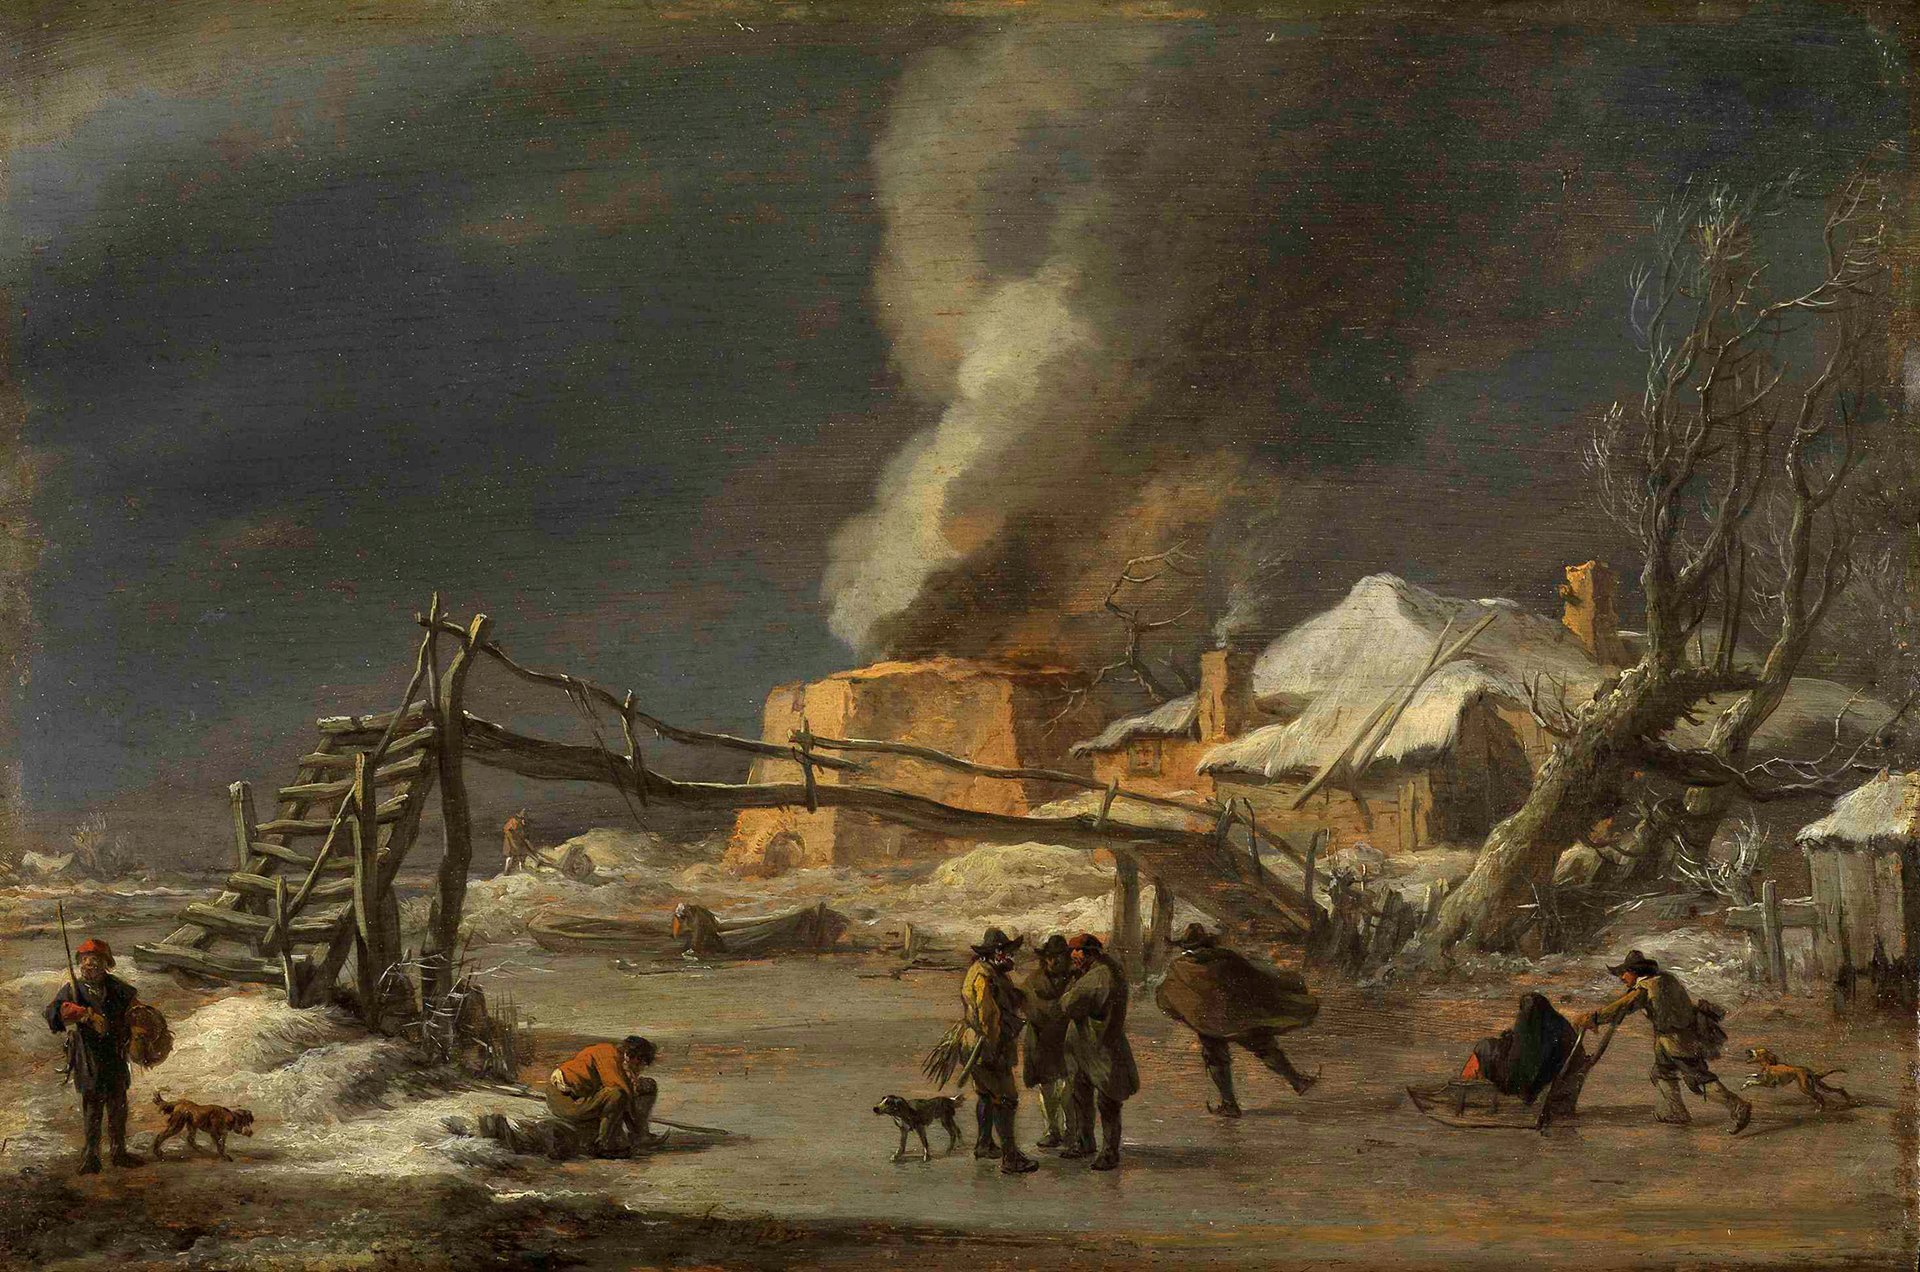 Abbildung des Werks "Winterlandschaft mit Kalkofen" von Nicolaes Berchem aus dem Jahr 1665/70, das in der Ausstellung "Die Meister-Sammlerin" vom 30. Mai bis 6. September 2015 in der Staatlichen Kunsthalle Karlsruhe zu sehen war.